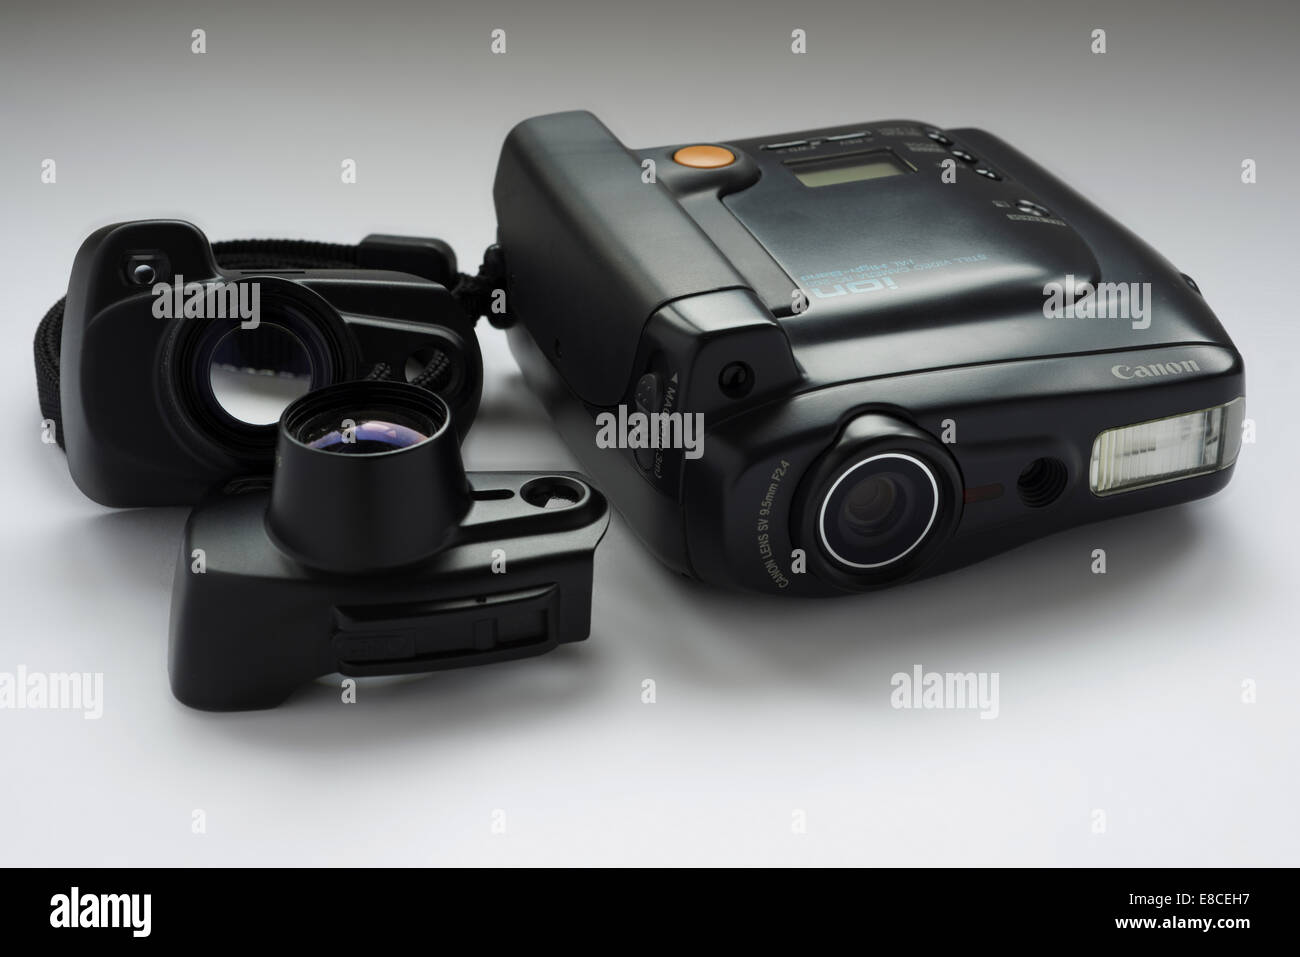 Ion de l'appareil photo numérique Canon des années 1980 avec les lentilles auxiliaires. Banque D'Images